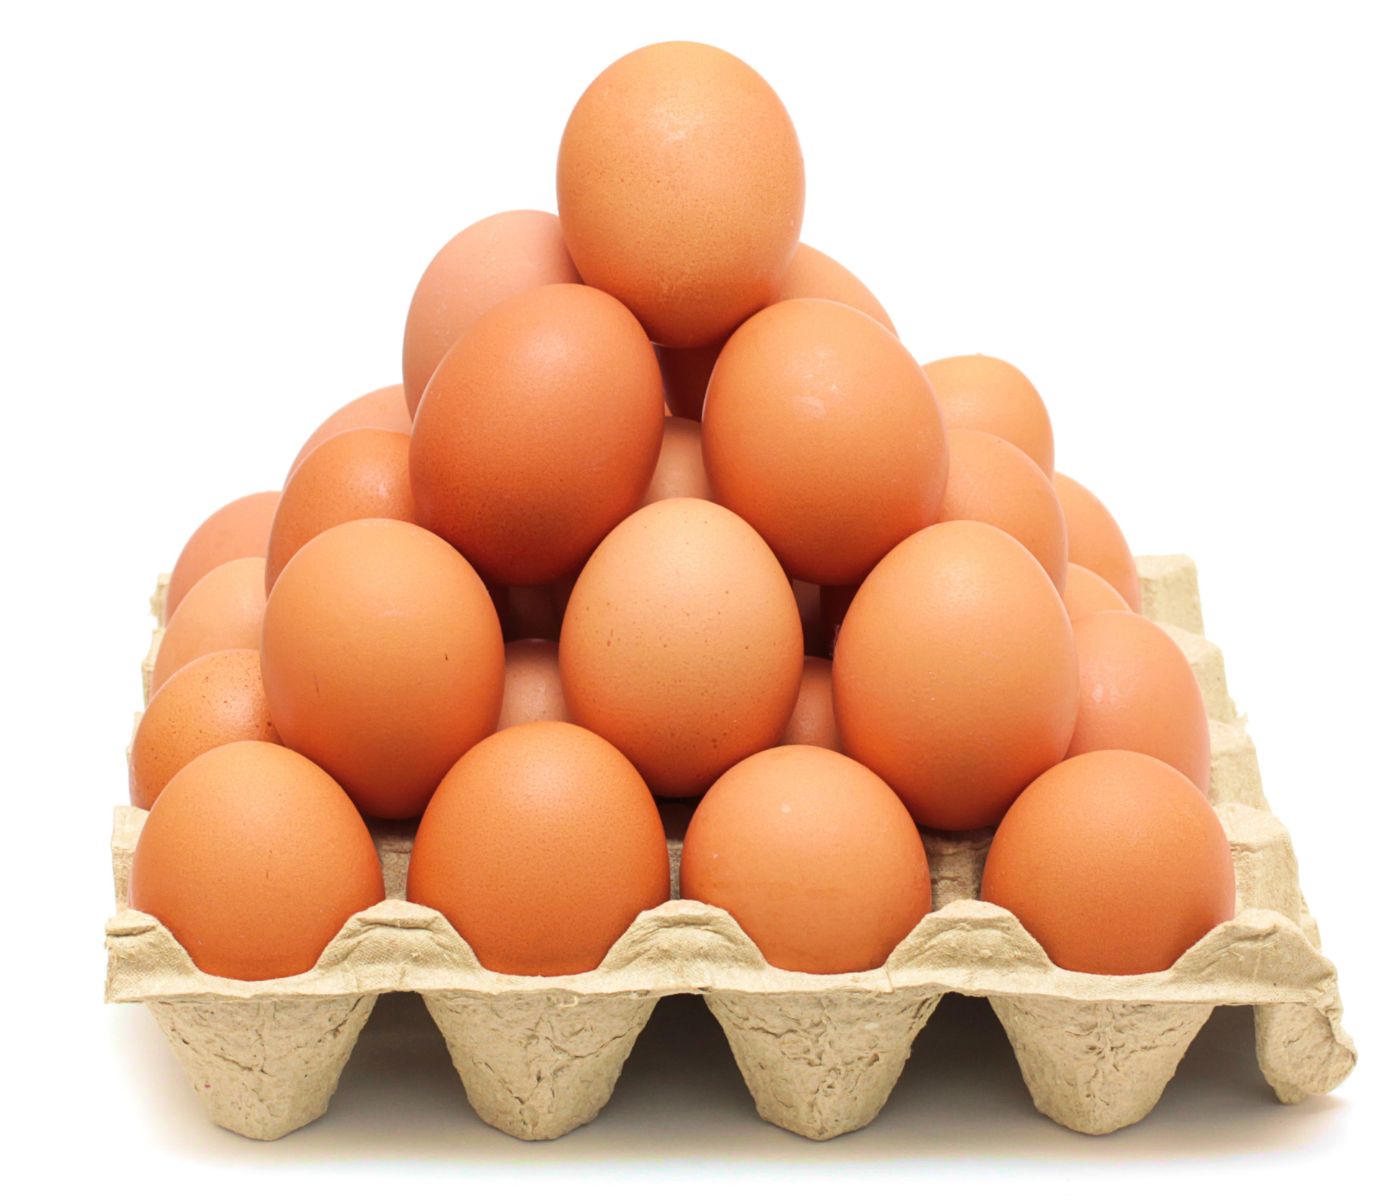 El huevo: ¡El producto preferido de los colombianos!